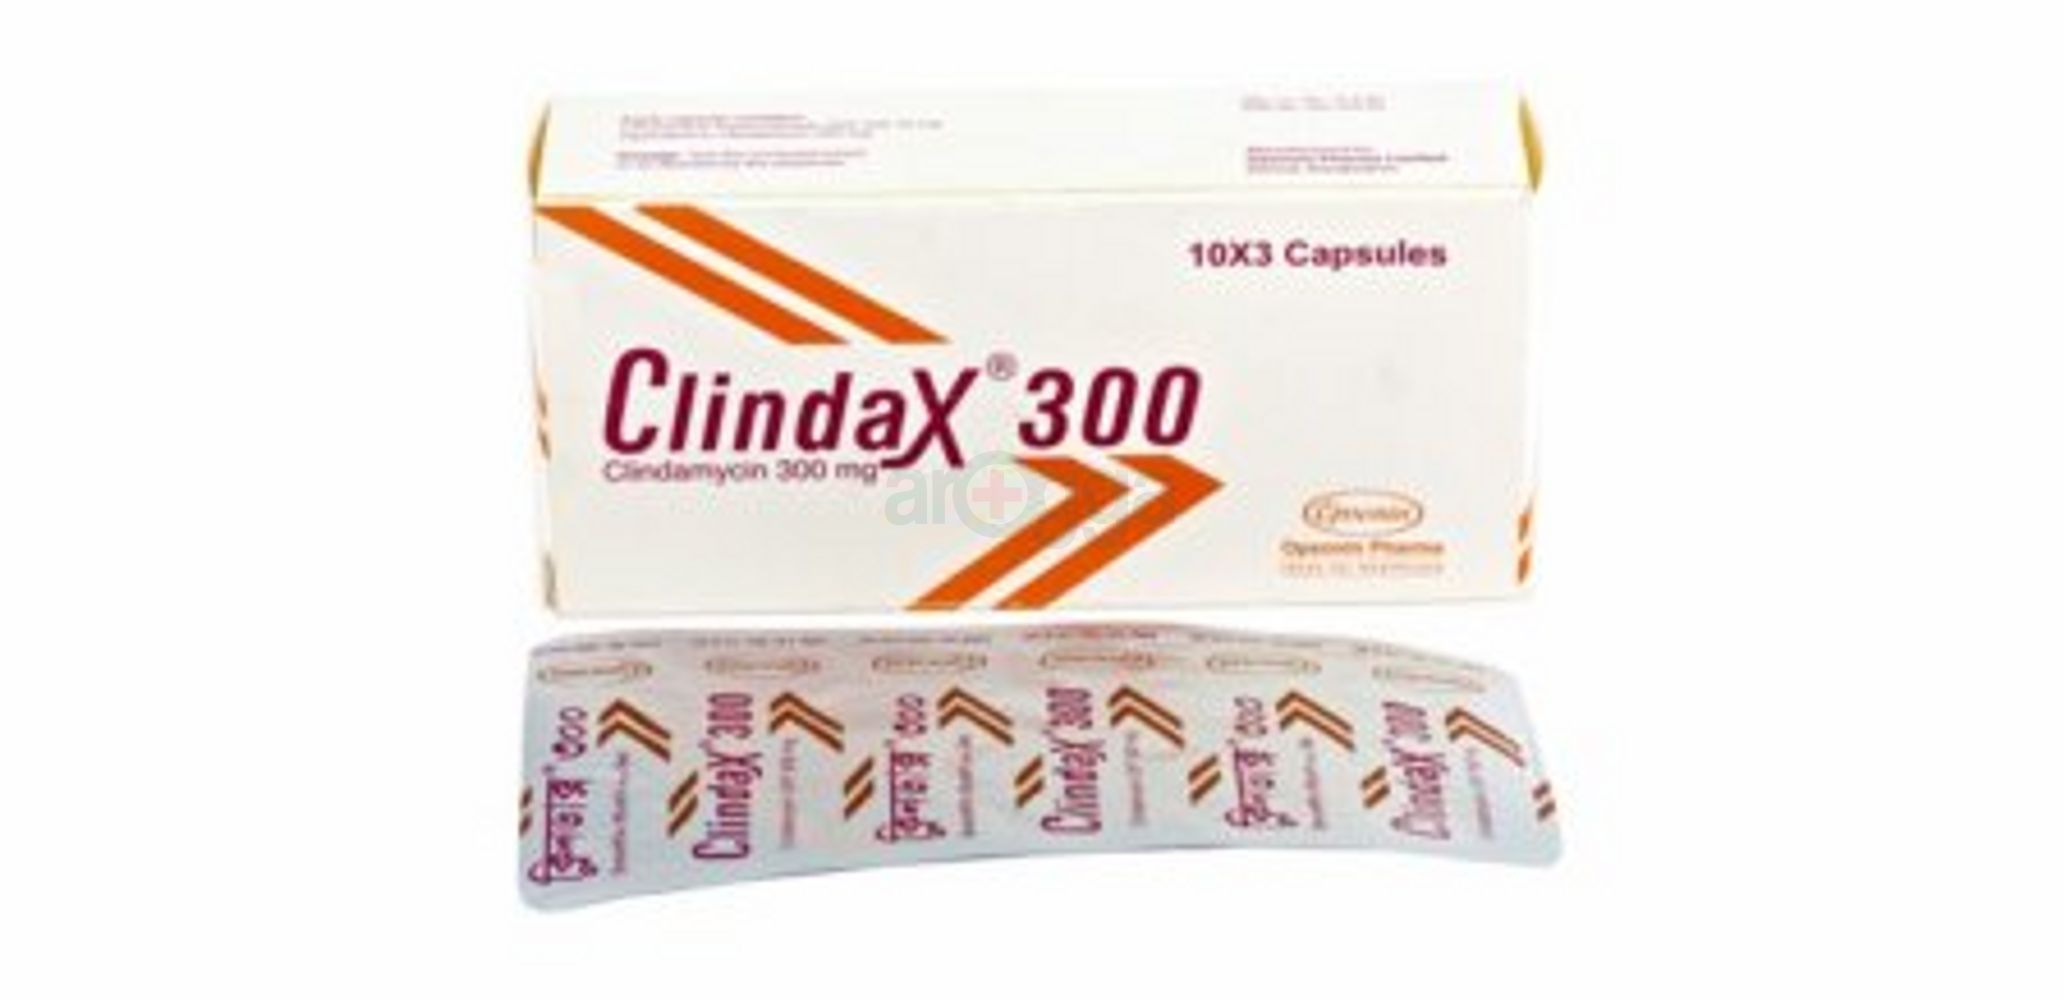 Clindax 300